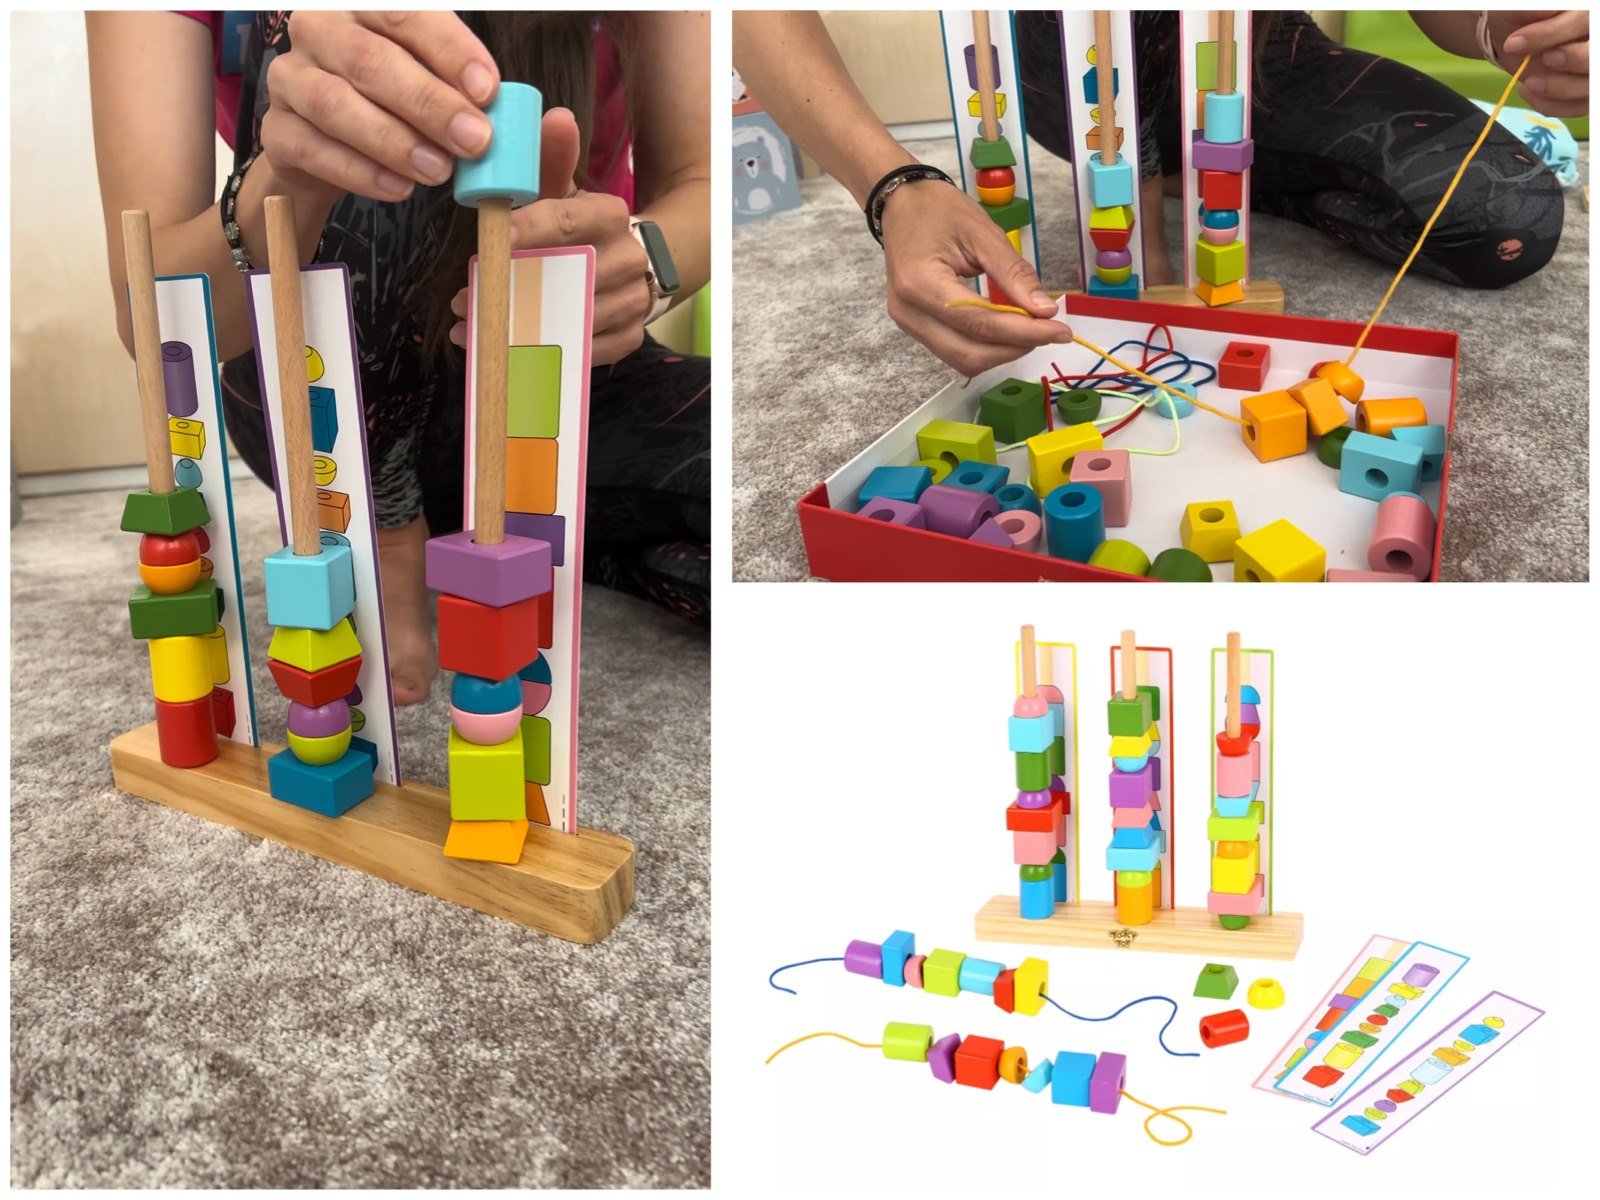 Deti sa hravou formou učia rozpoznávať a spájať farby, tvary alebo čísla.